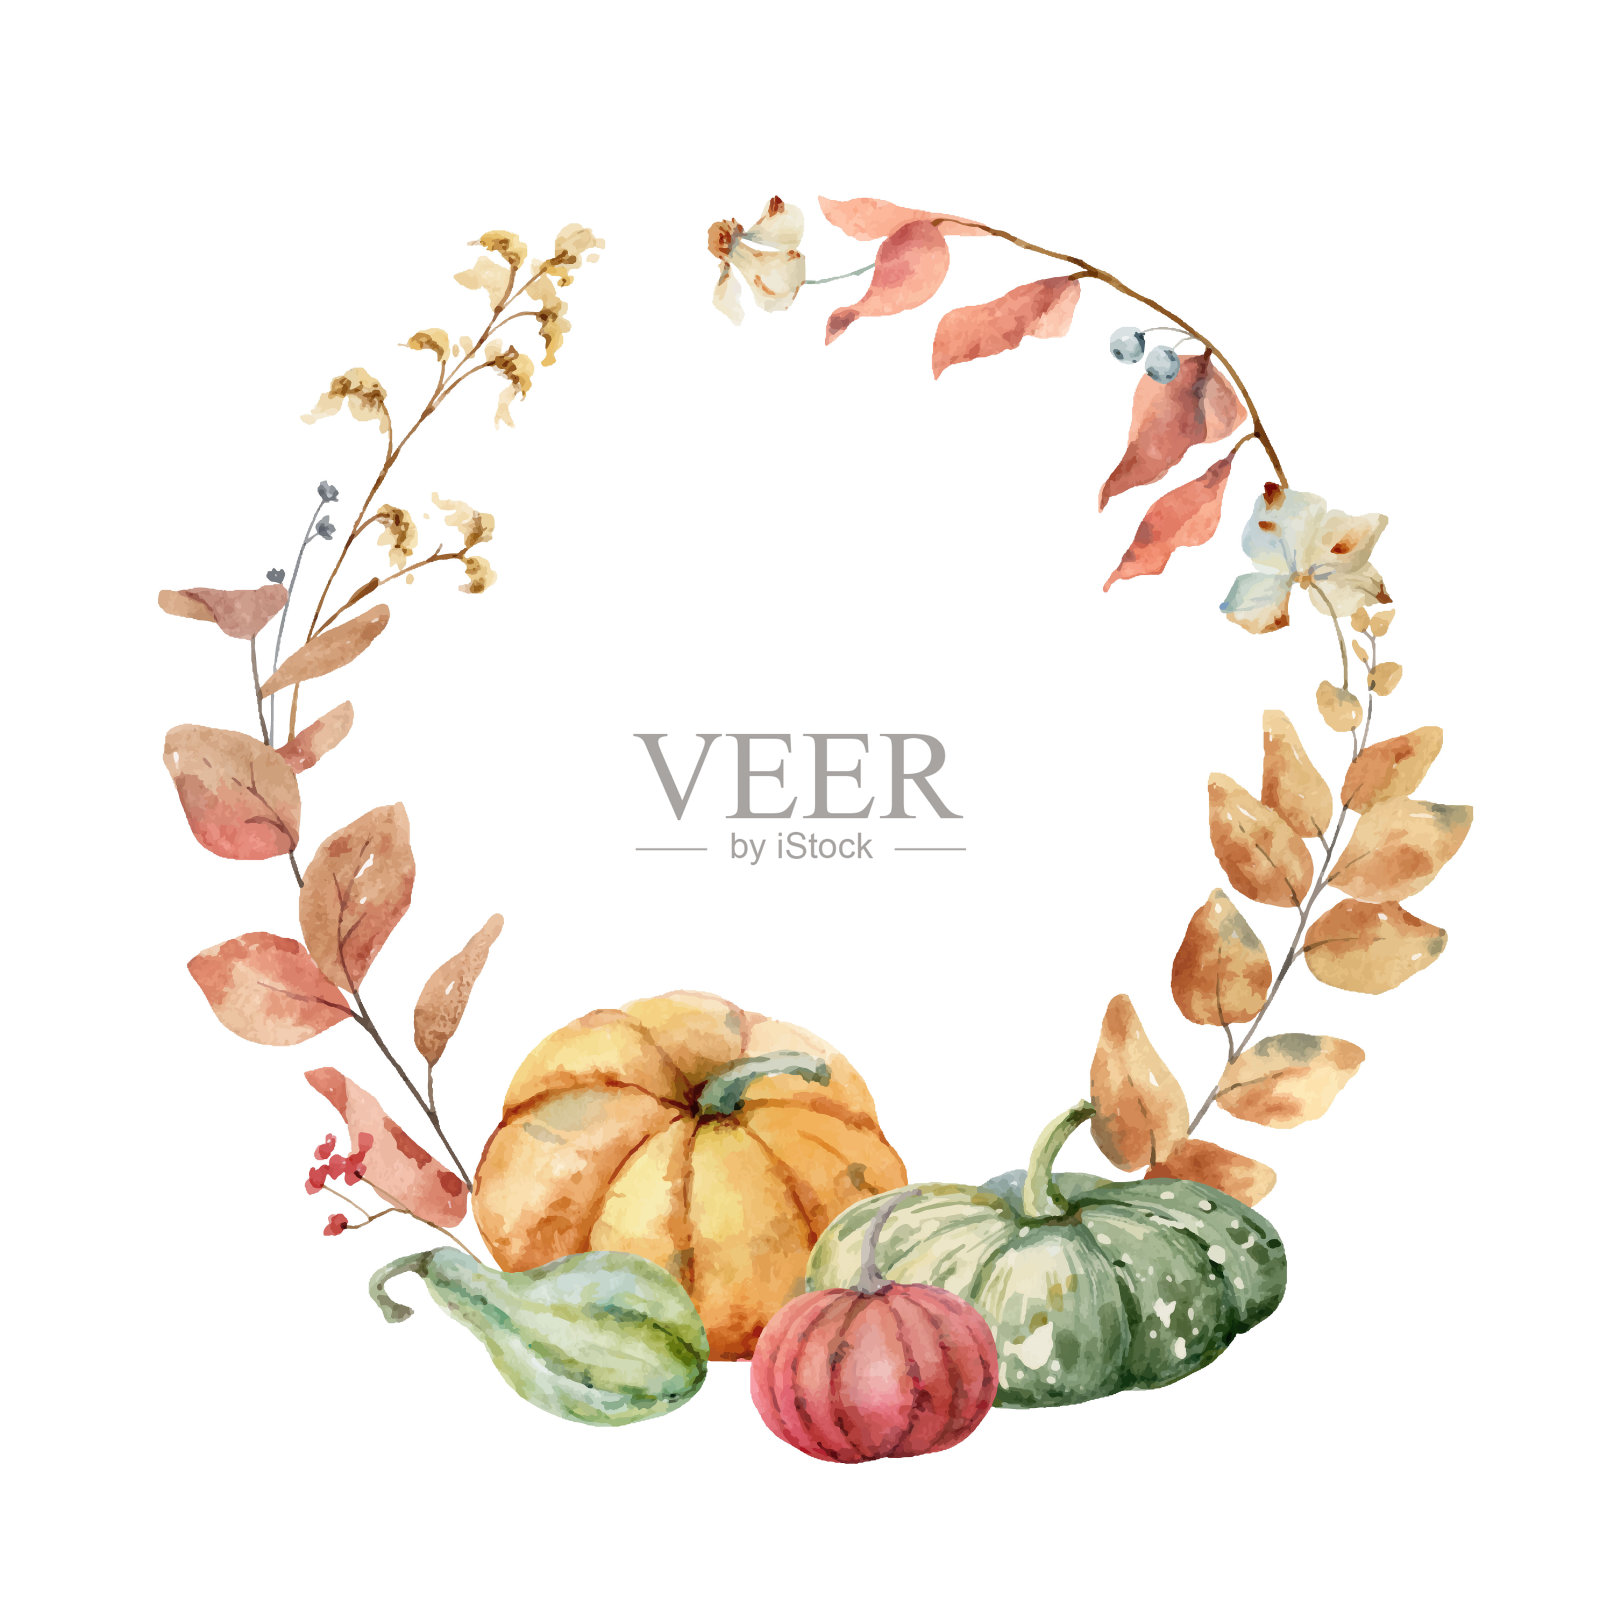 感恩节的载体用秋天的叶子和花朵来装饰五颜六色的南瓜。水彩卡片的感恩节孤立在白色的背景。插画图片素材